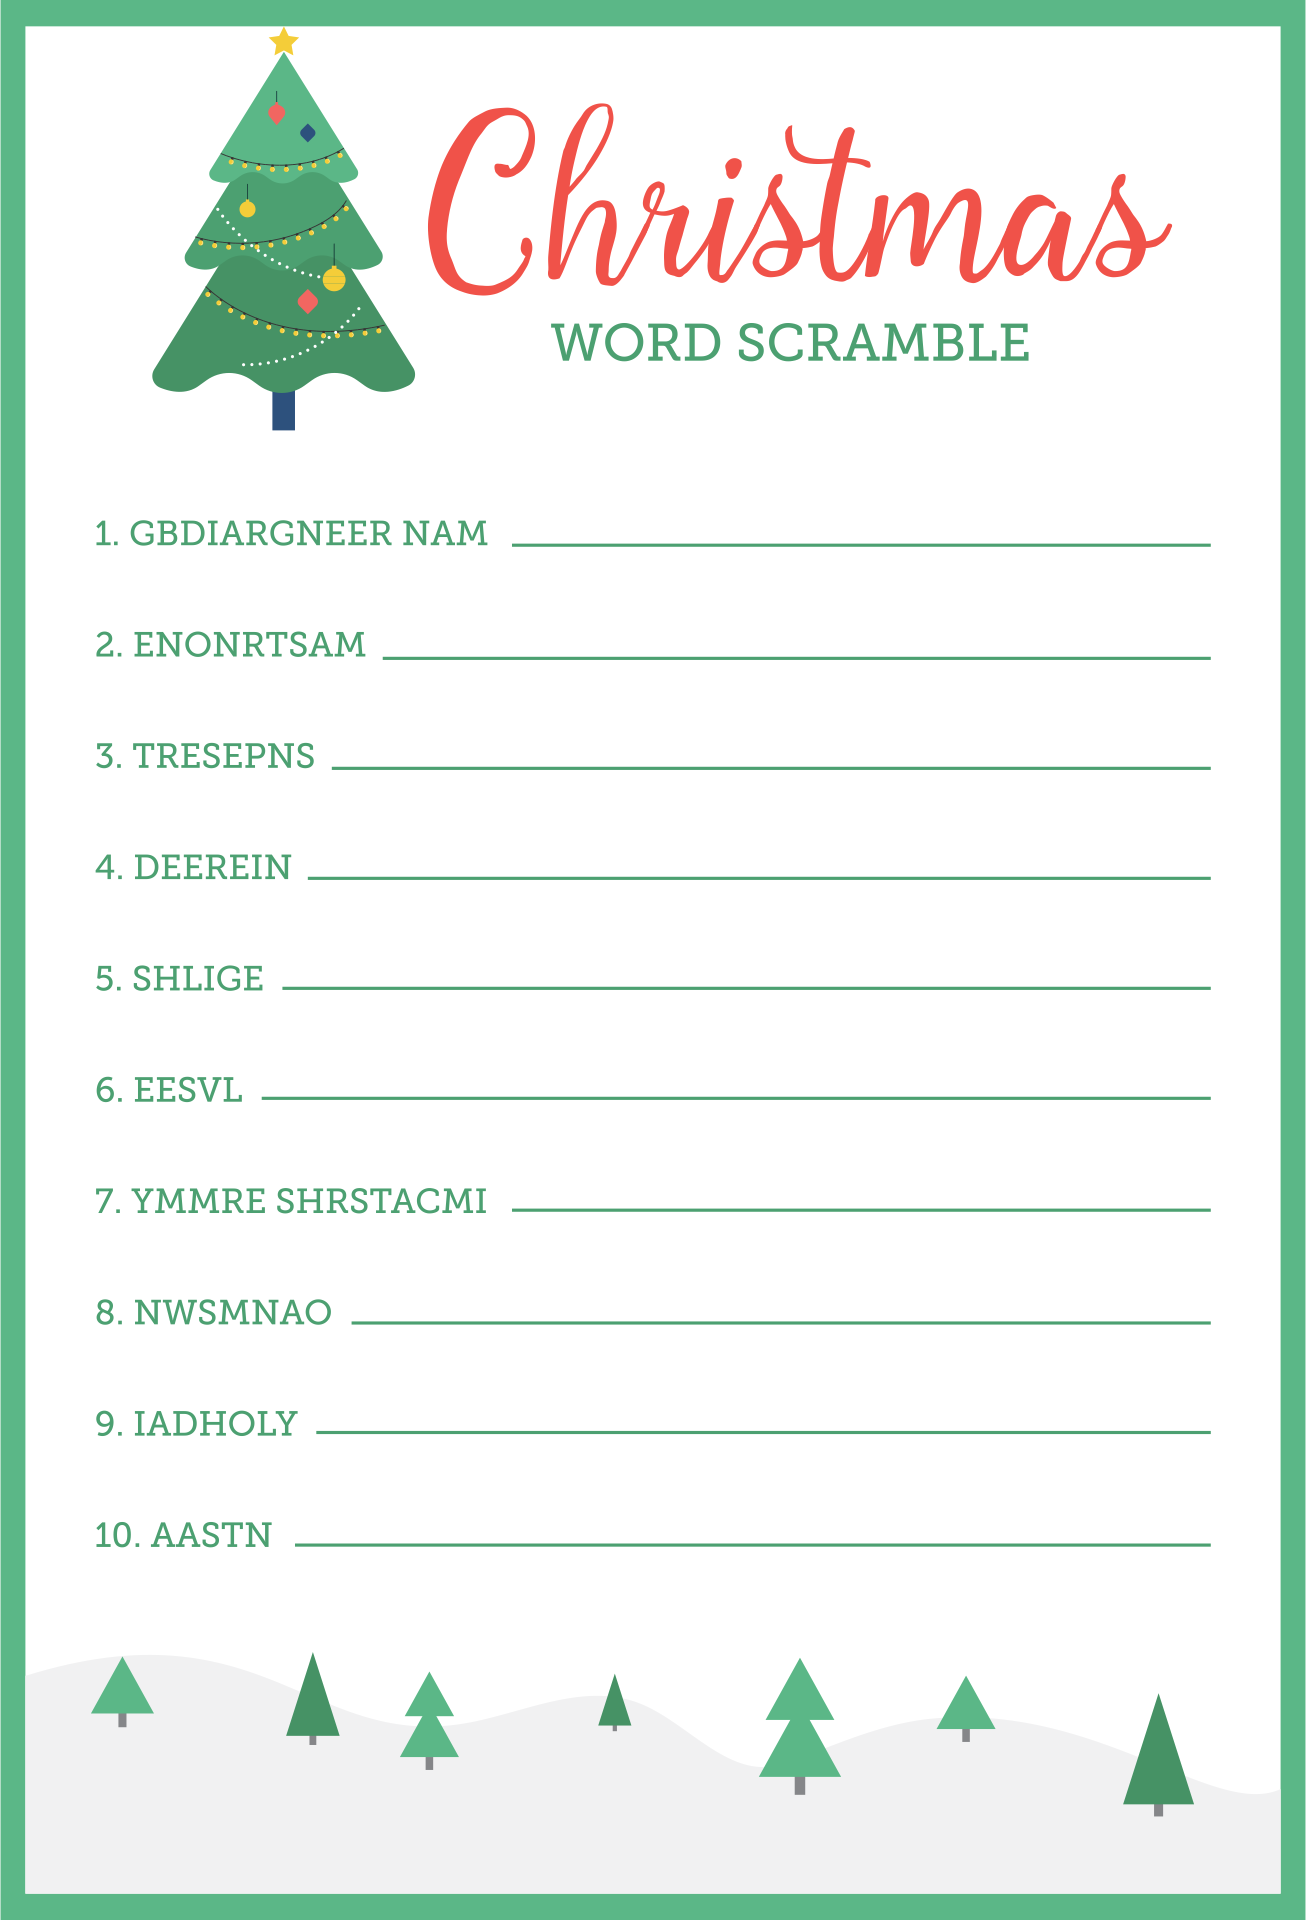 Christmas Word Scramble Printable Game